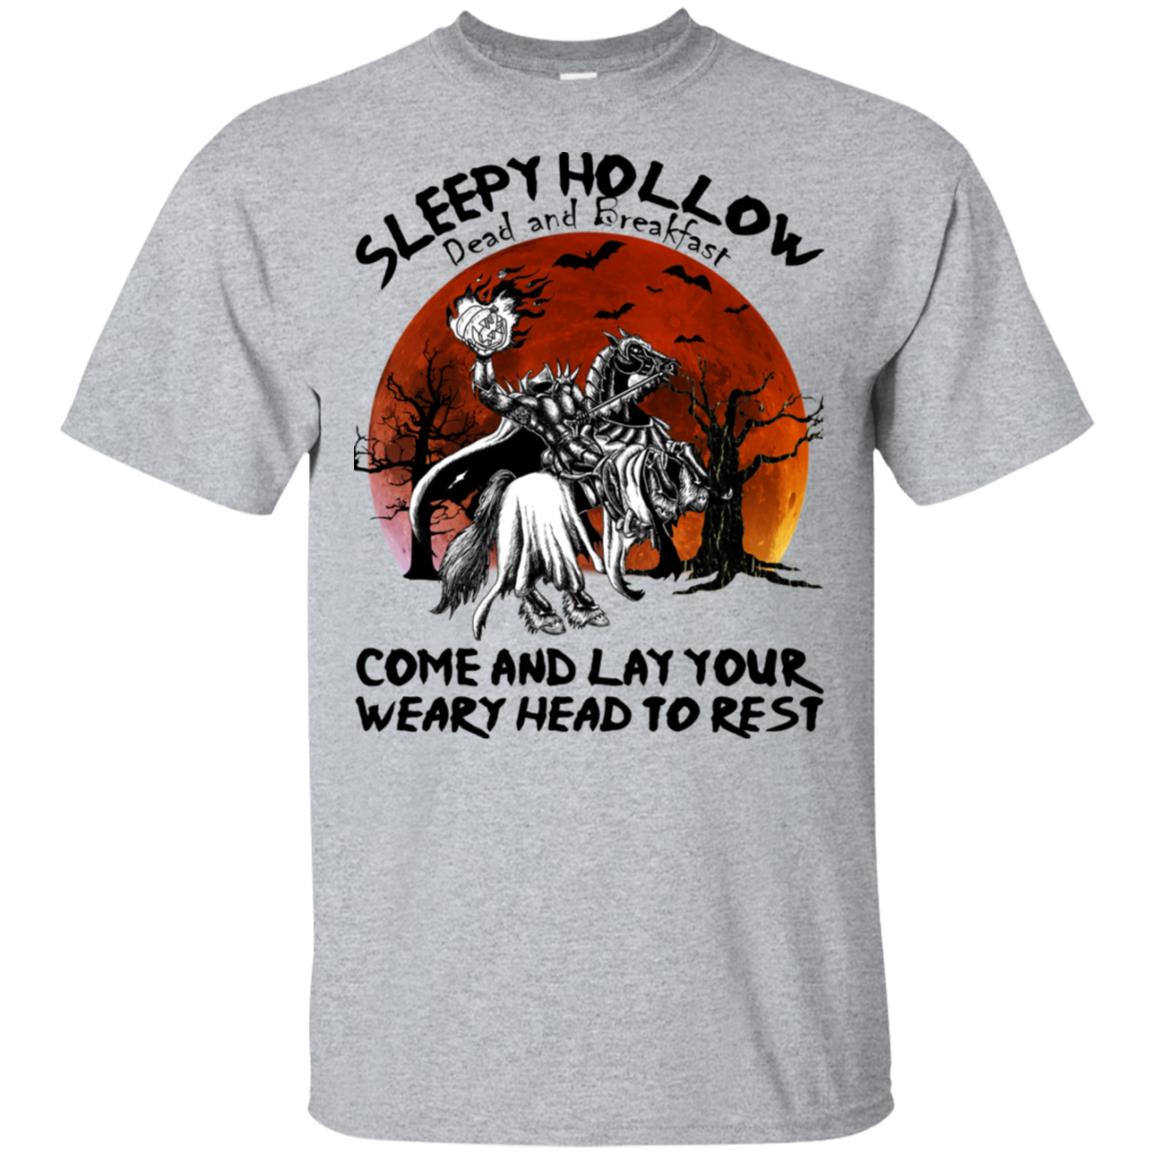 Sleepy Hollow Dead & Breakfast tshirt